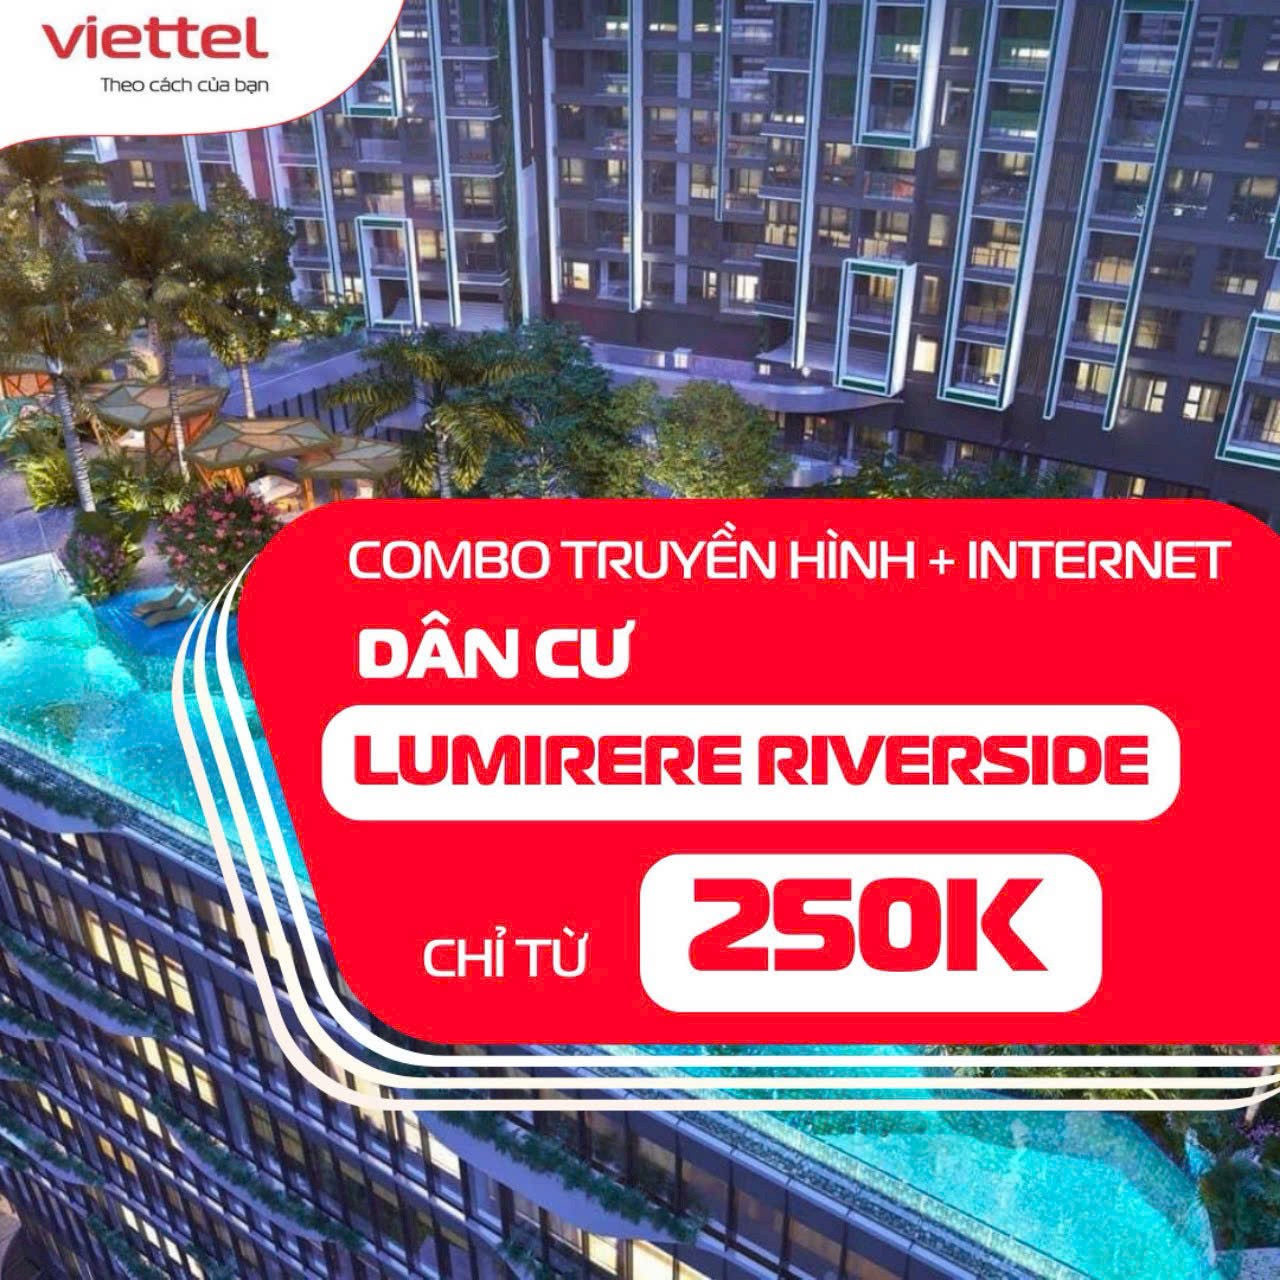 Khuyến mãi đăng ký lắp đặt mạng Internet Viettel tại Lumiere Riverside